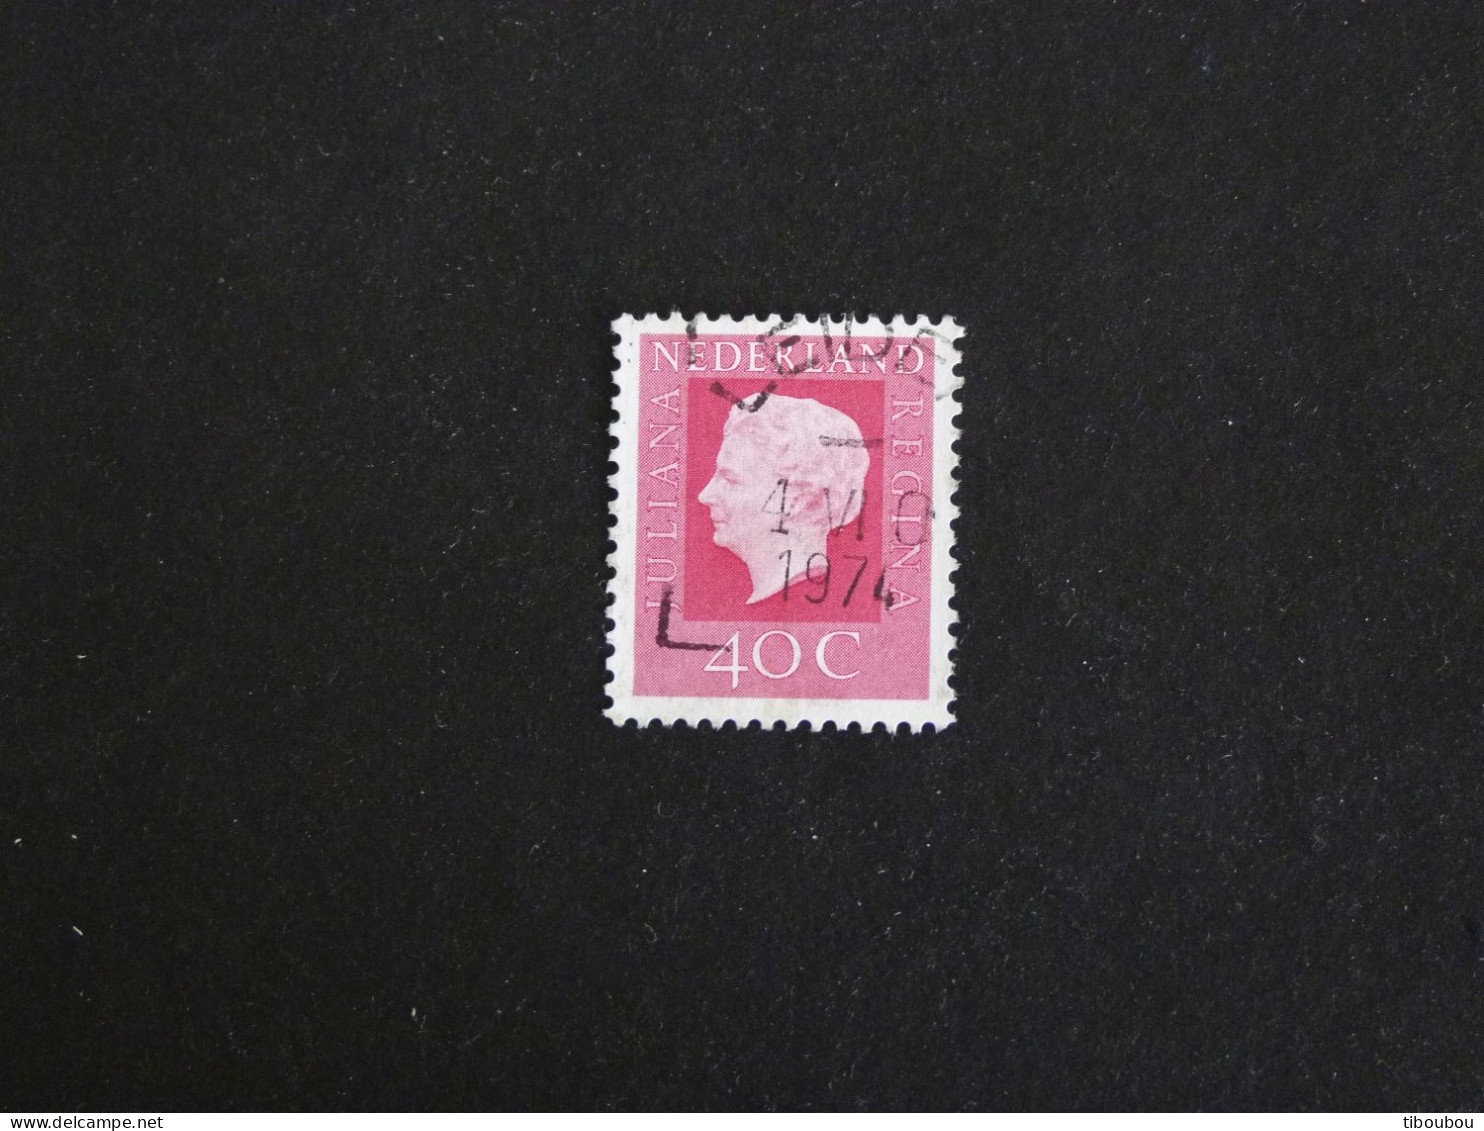 PAYS BAS NEDERLAND YT 946 OBLITERE - REINE JULIANA - Used Stamps